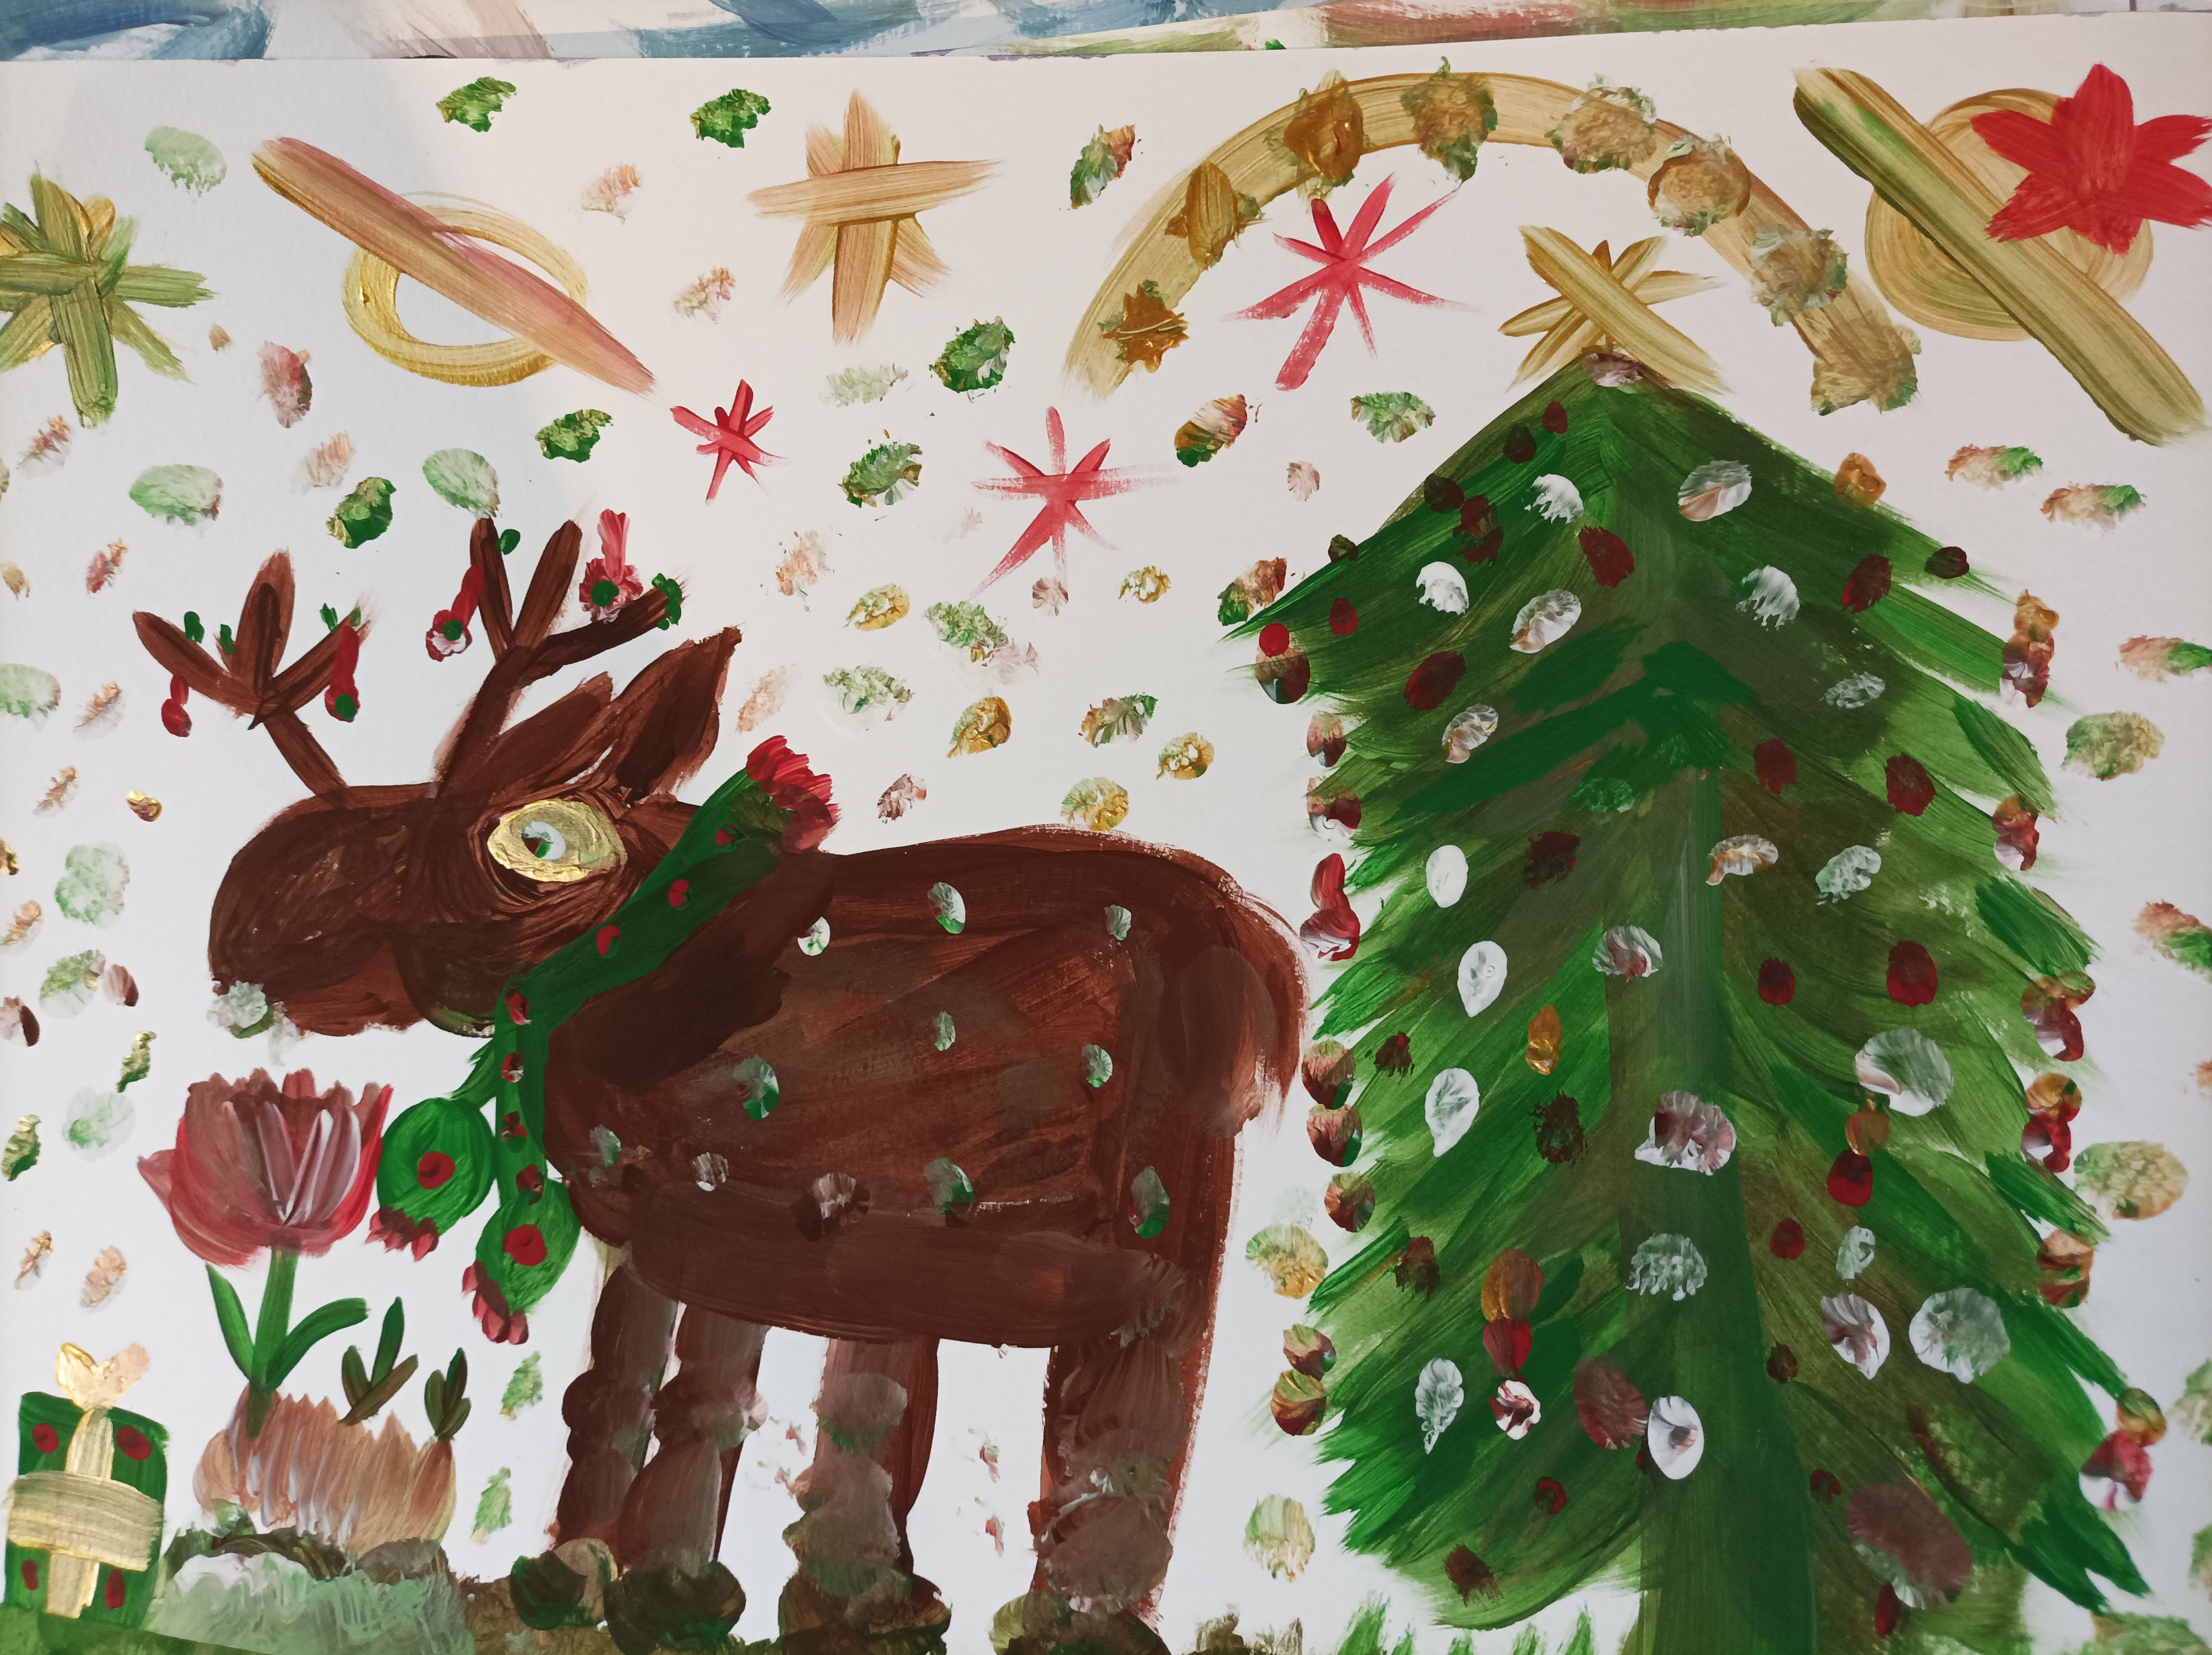 Gemälde: Elch steht neben einer geschmückten Tanne auf einer Wiese. Er trägt einen Schal und hat Weihnachtsschmuck im Geweih